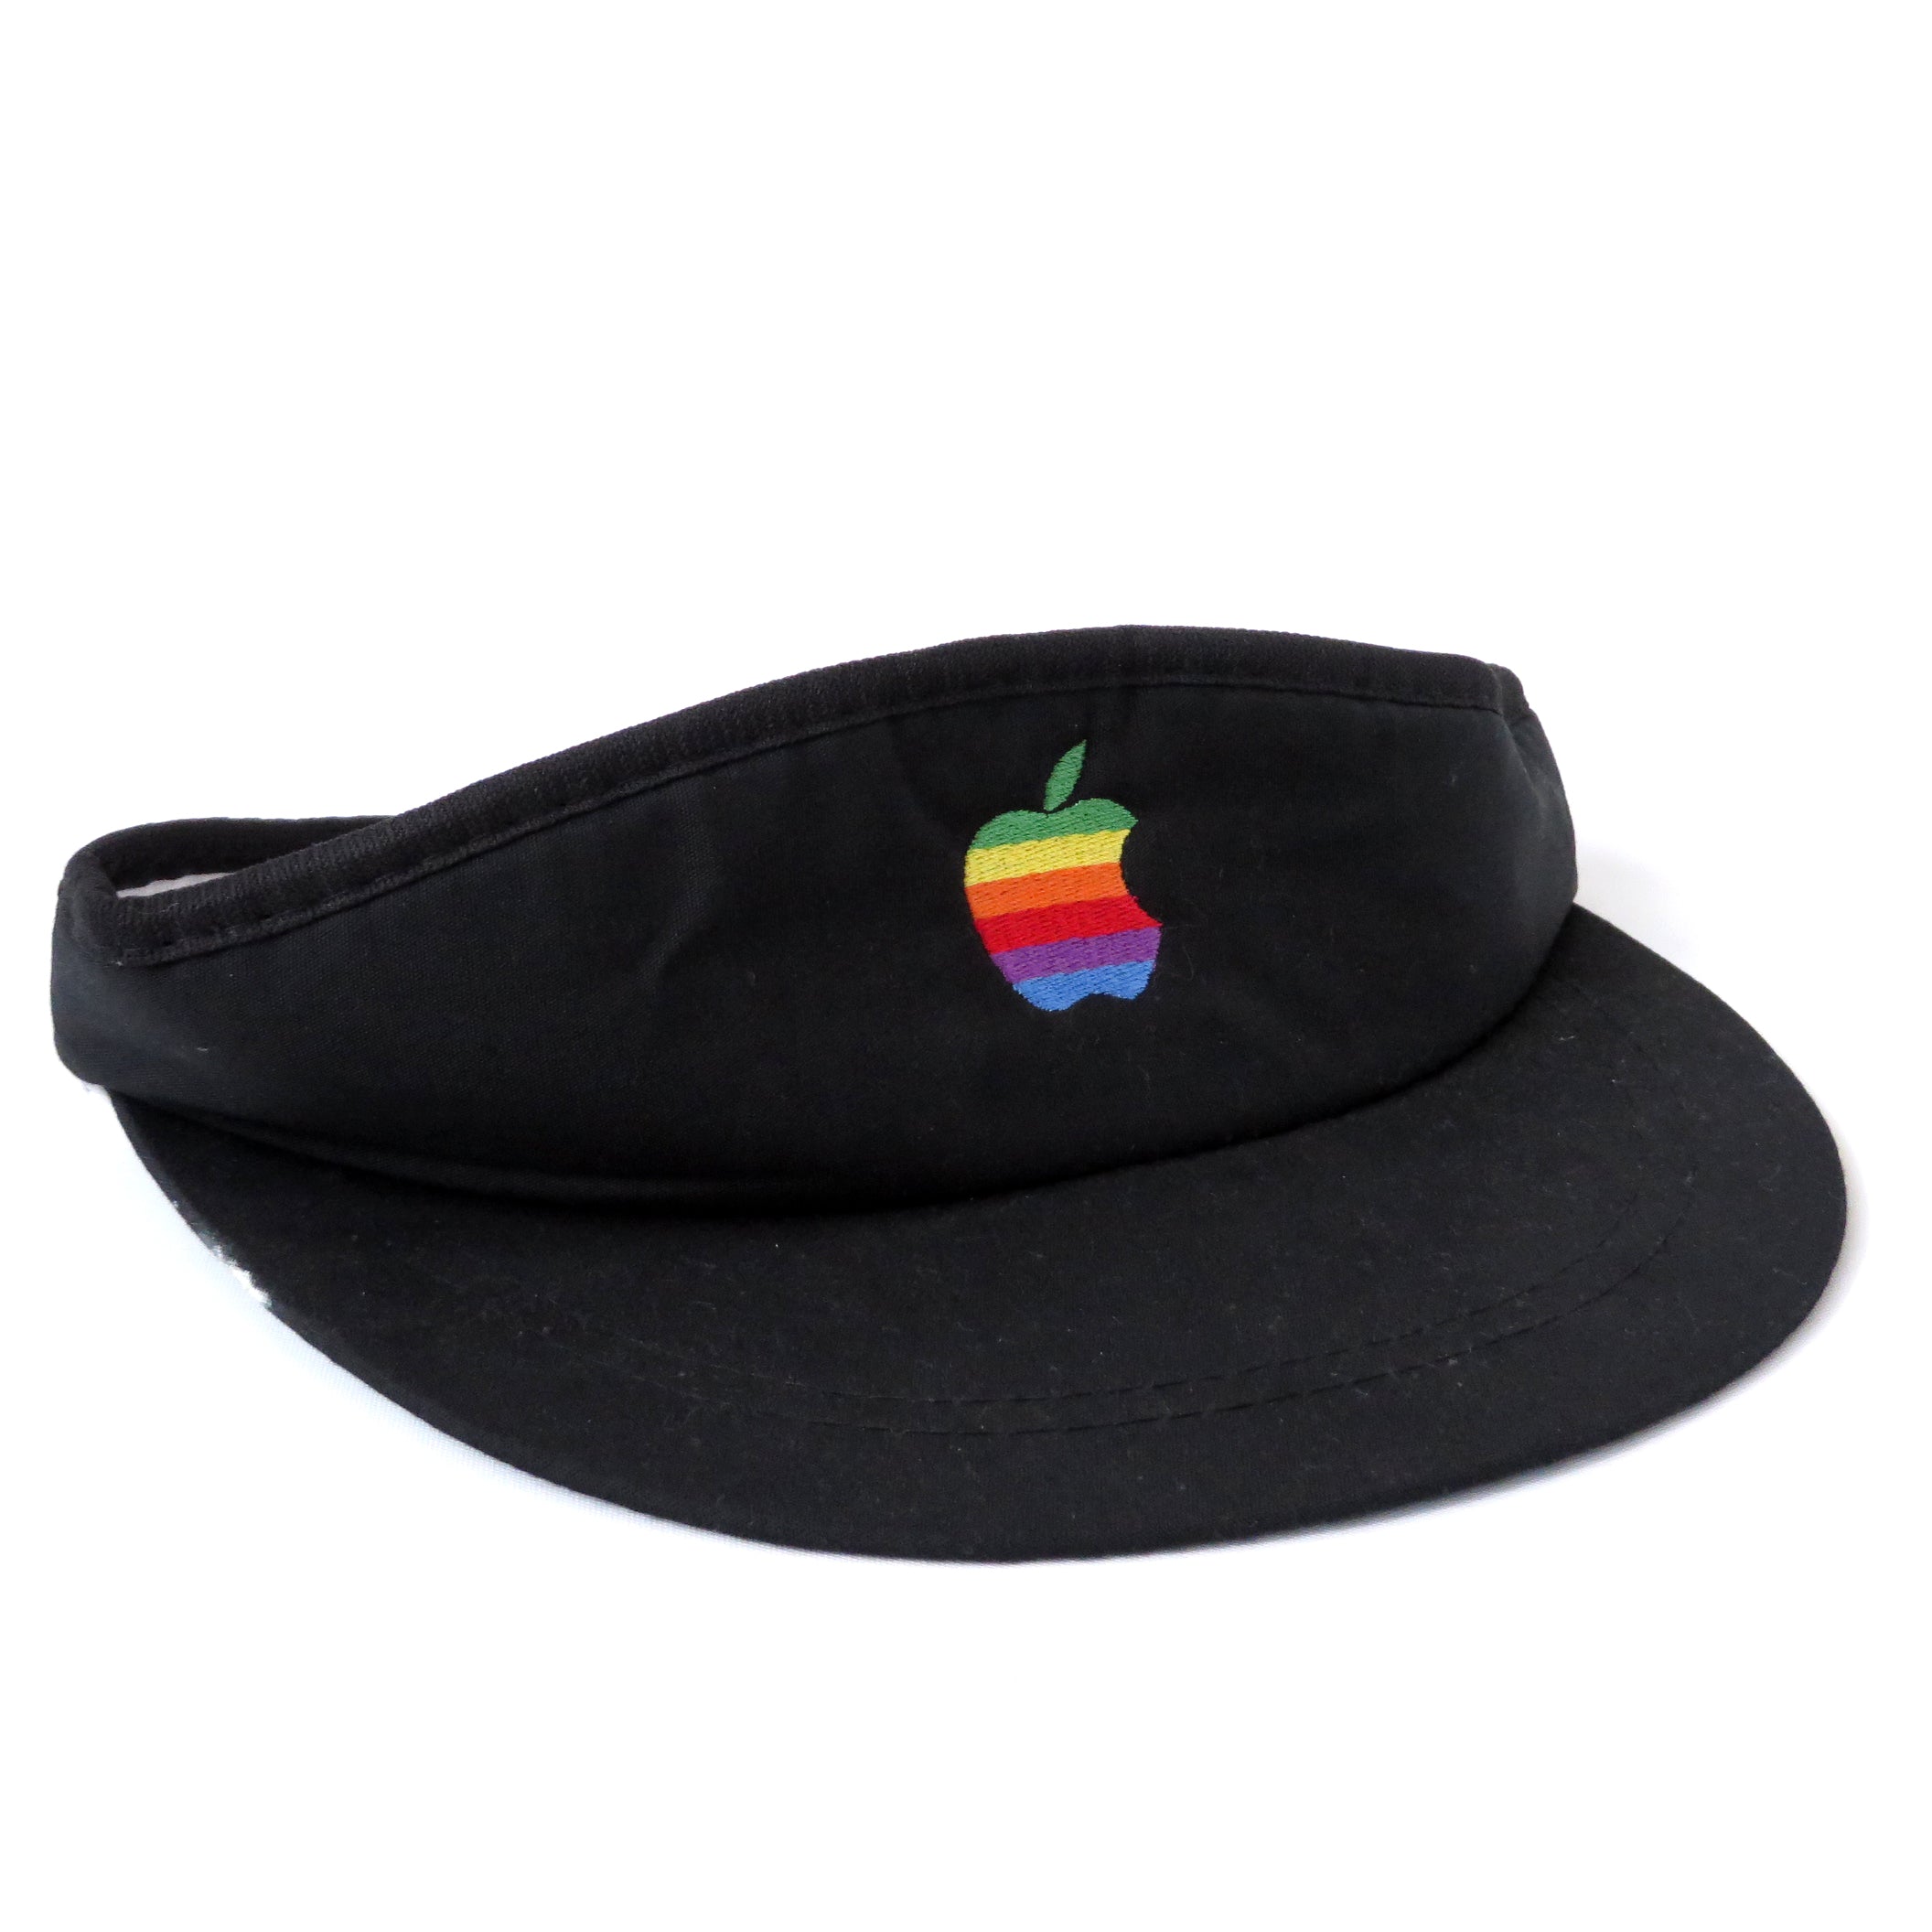 Vintage Apple Visor Hat